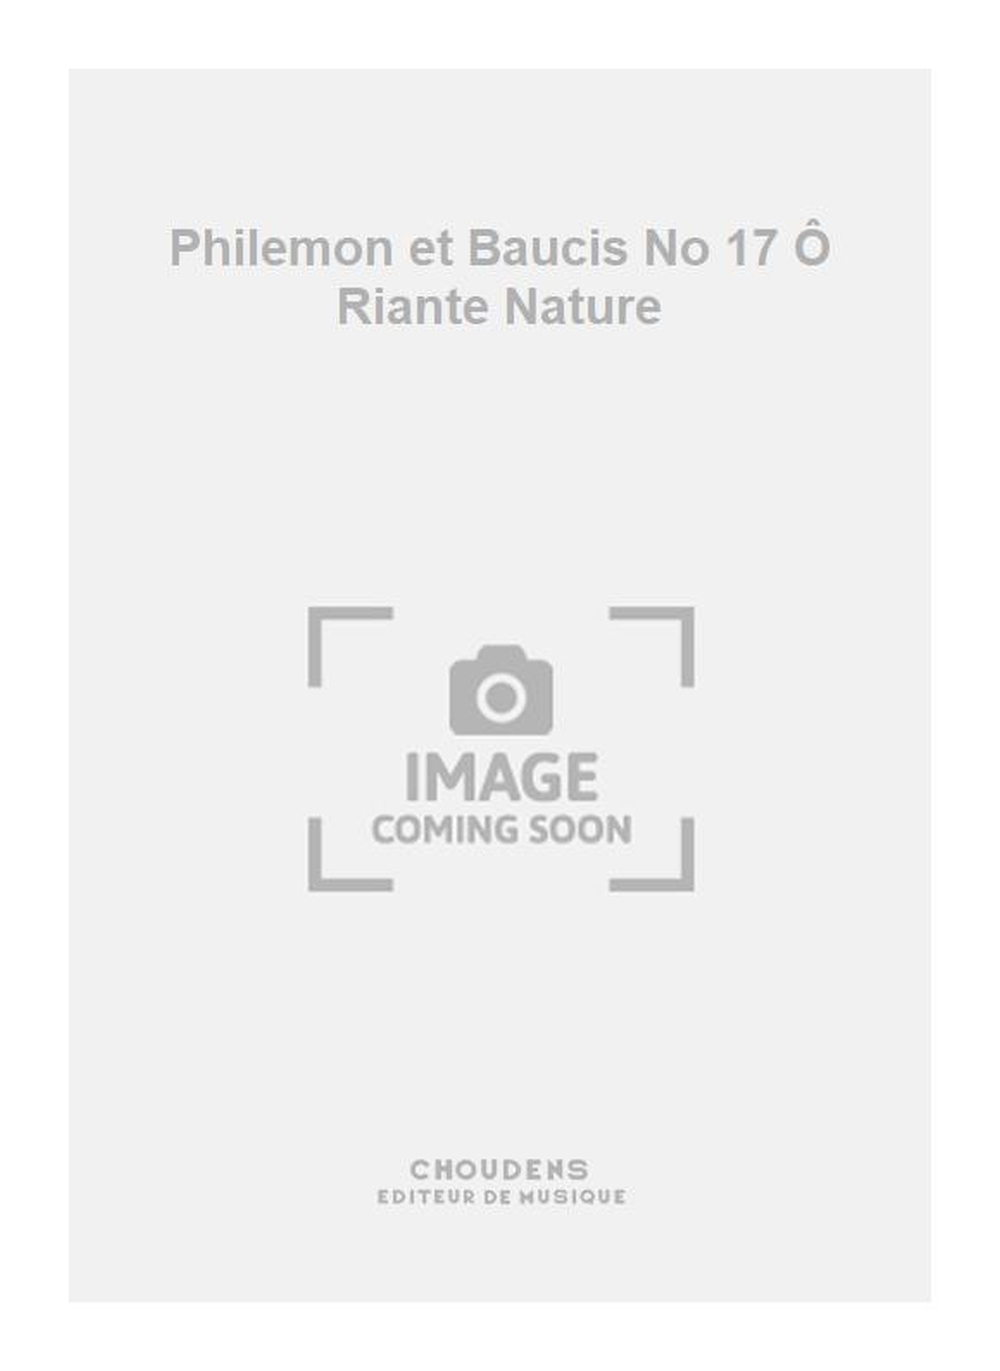 Charles Gounod: Philemon et Baucis No 17  Riante Nature